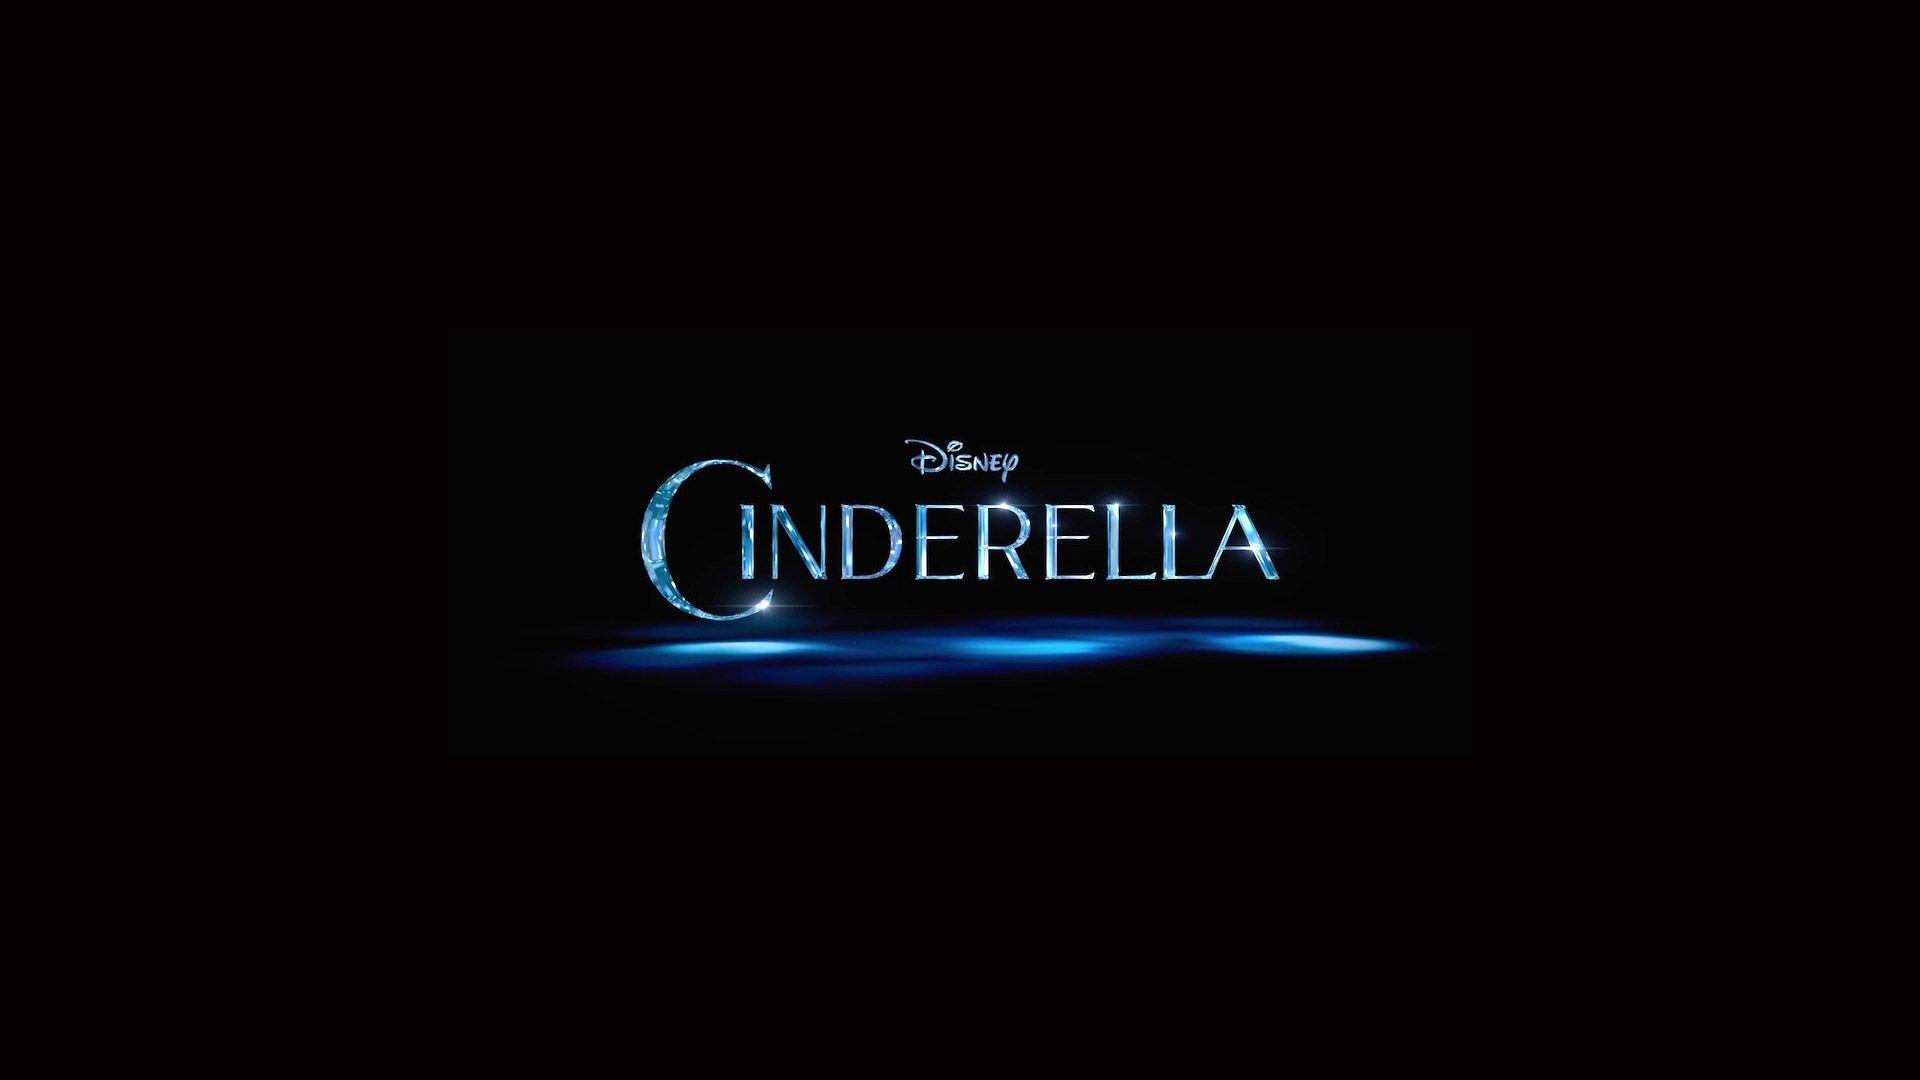 1920 Movie Logo - Cinderella Movie Logo Wallpaper 52209 1920x1080px